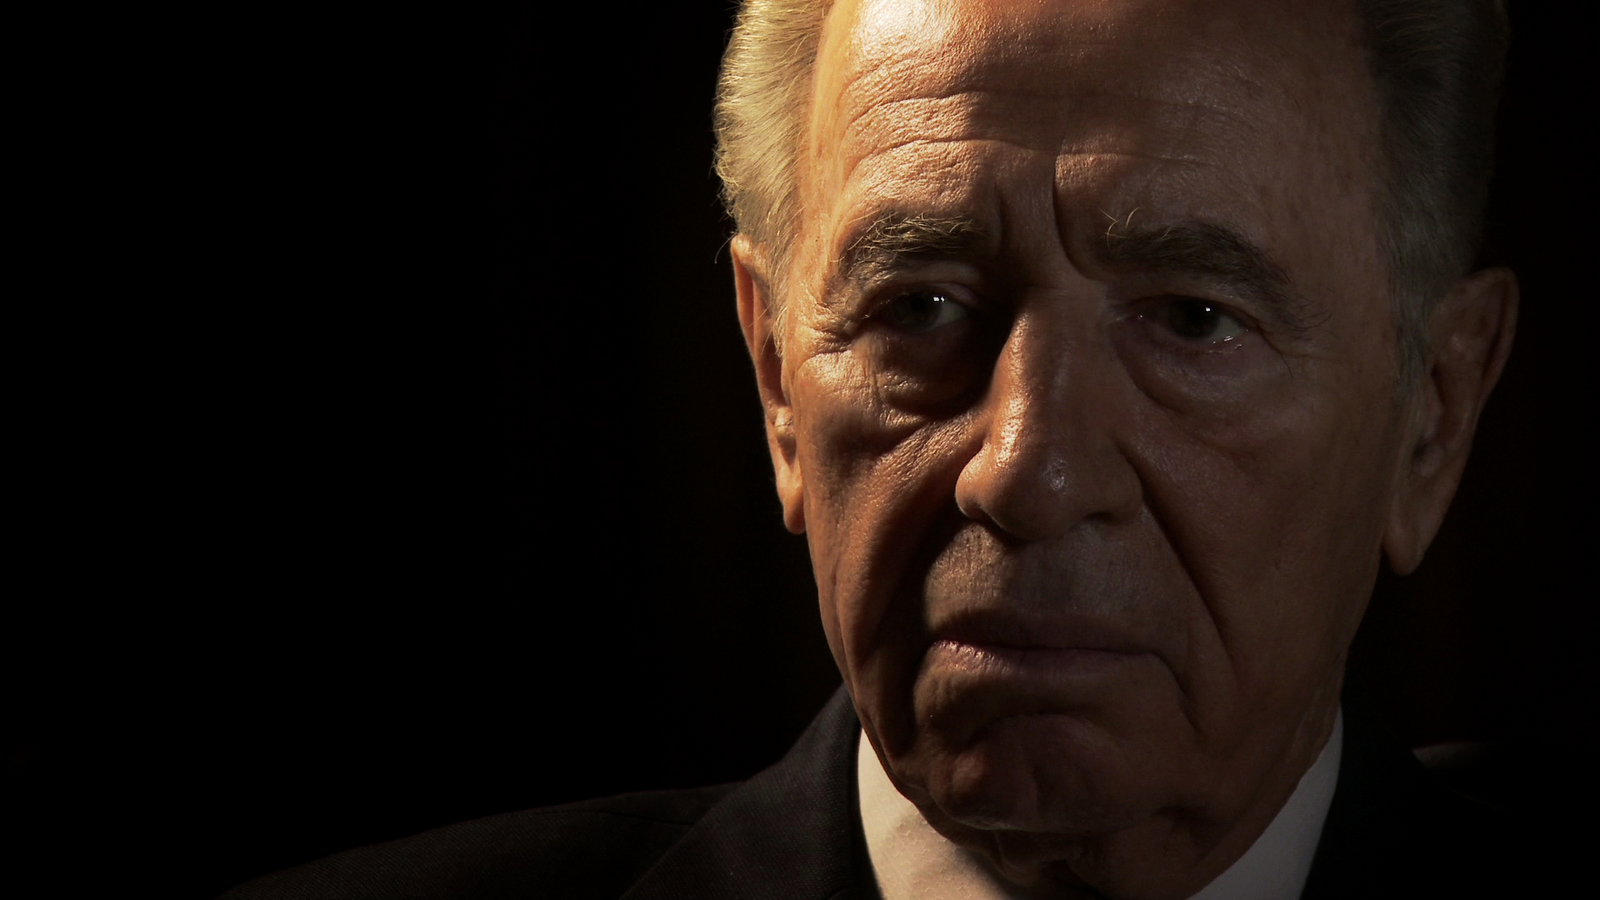 Şimon Peres haqqında bilmədikləriniz - FOTOLAR